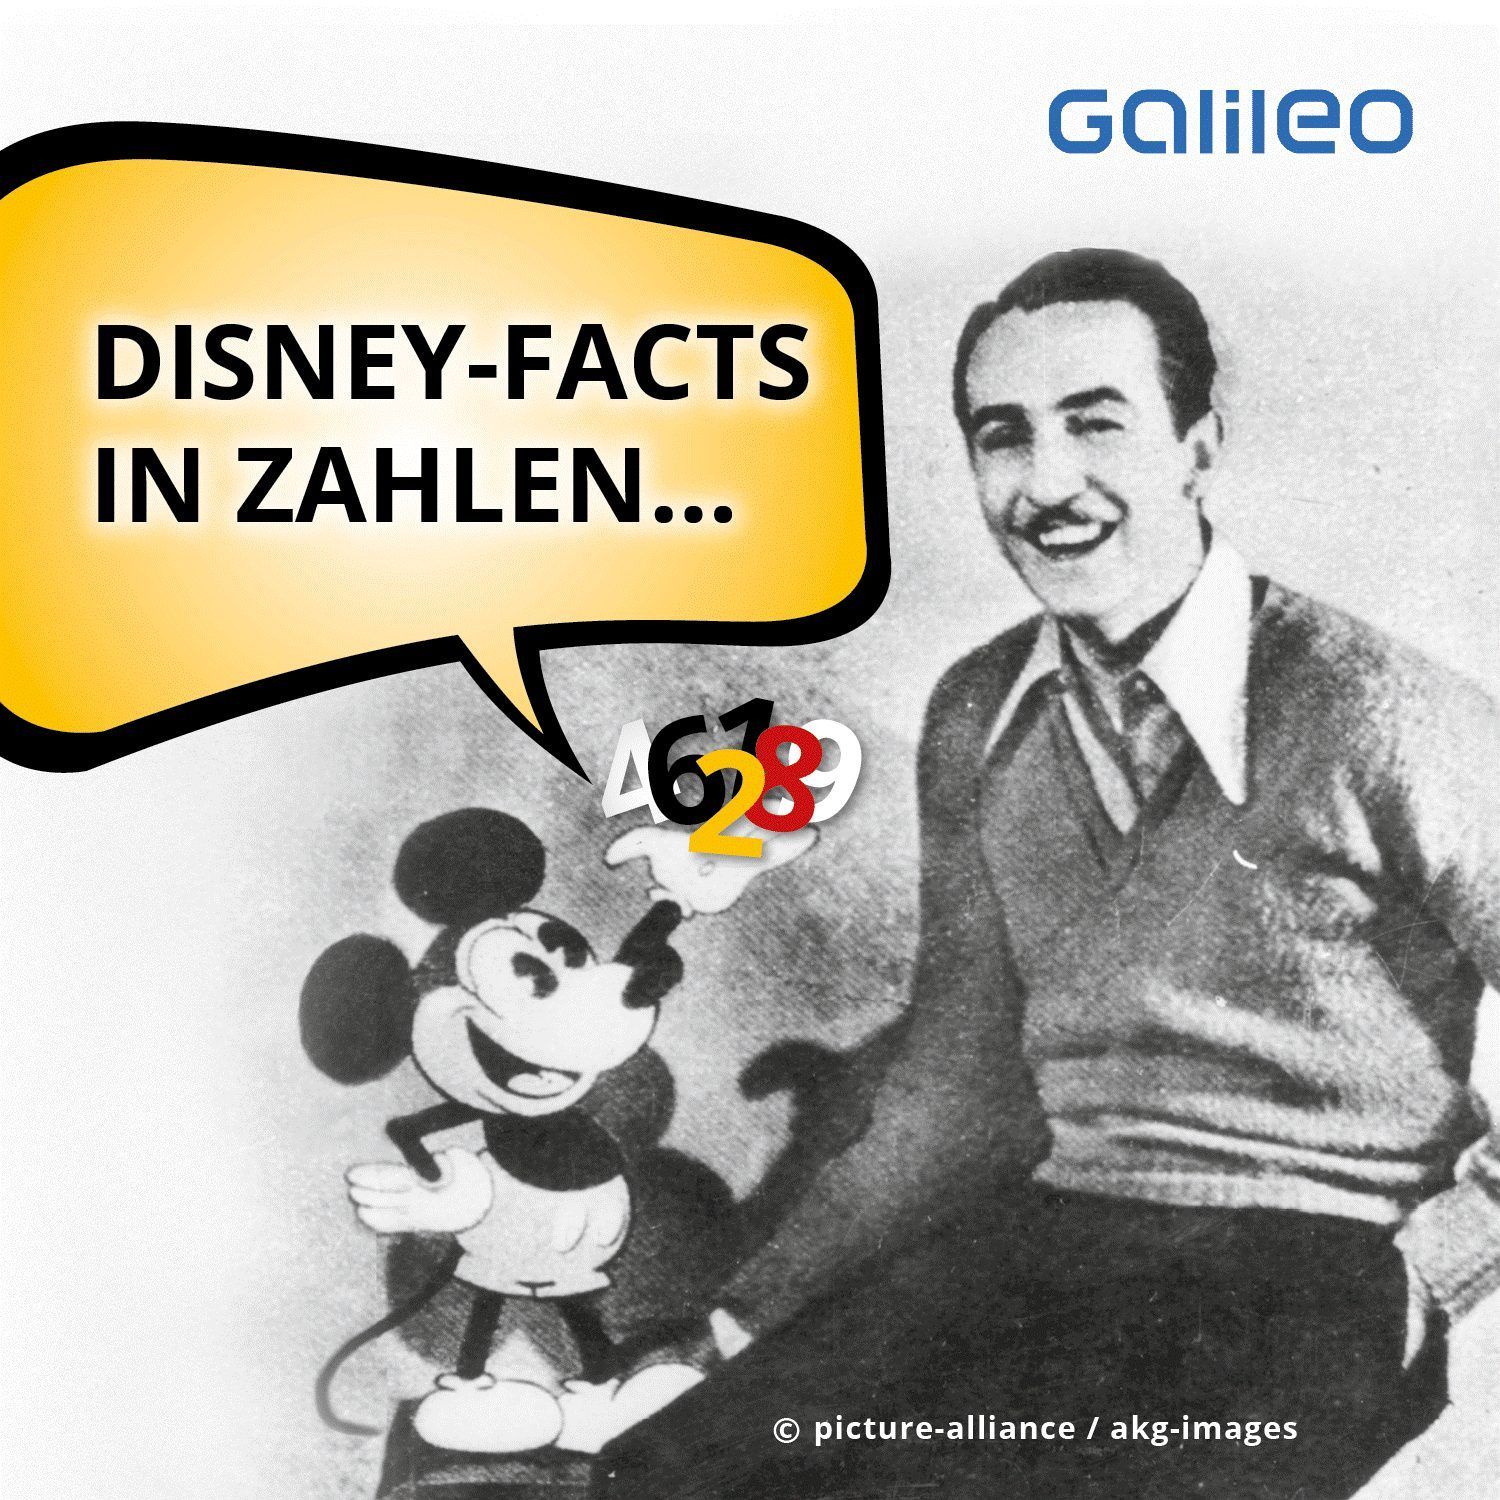 Disney-Facts in Zahlen